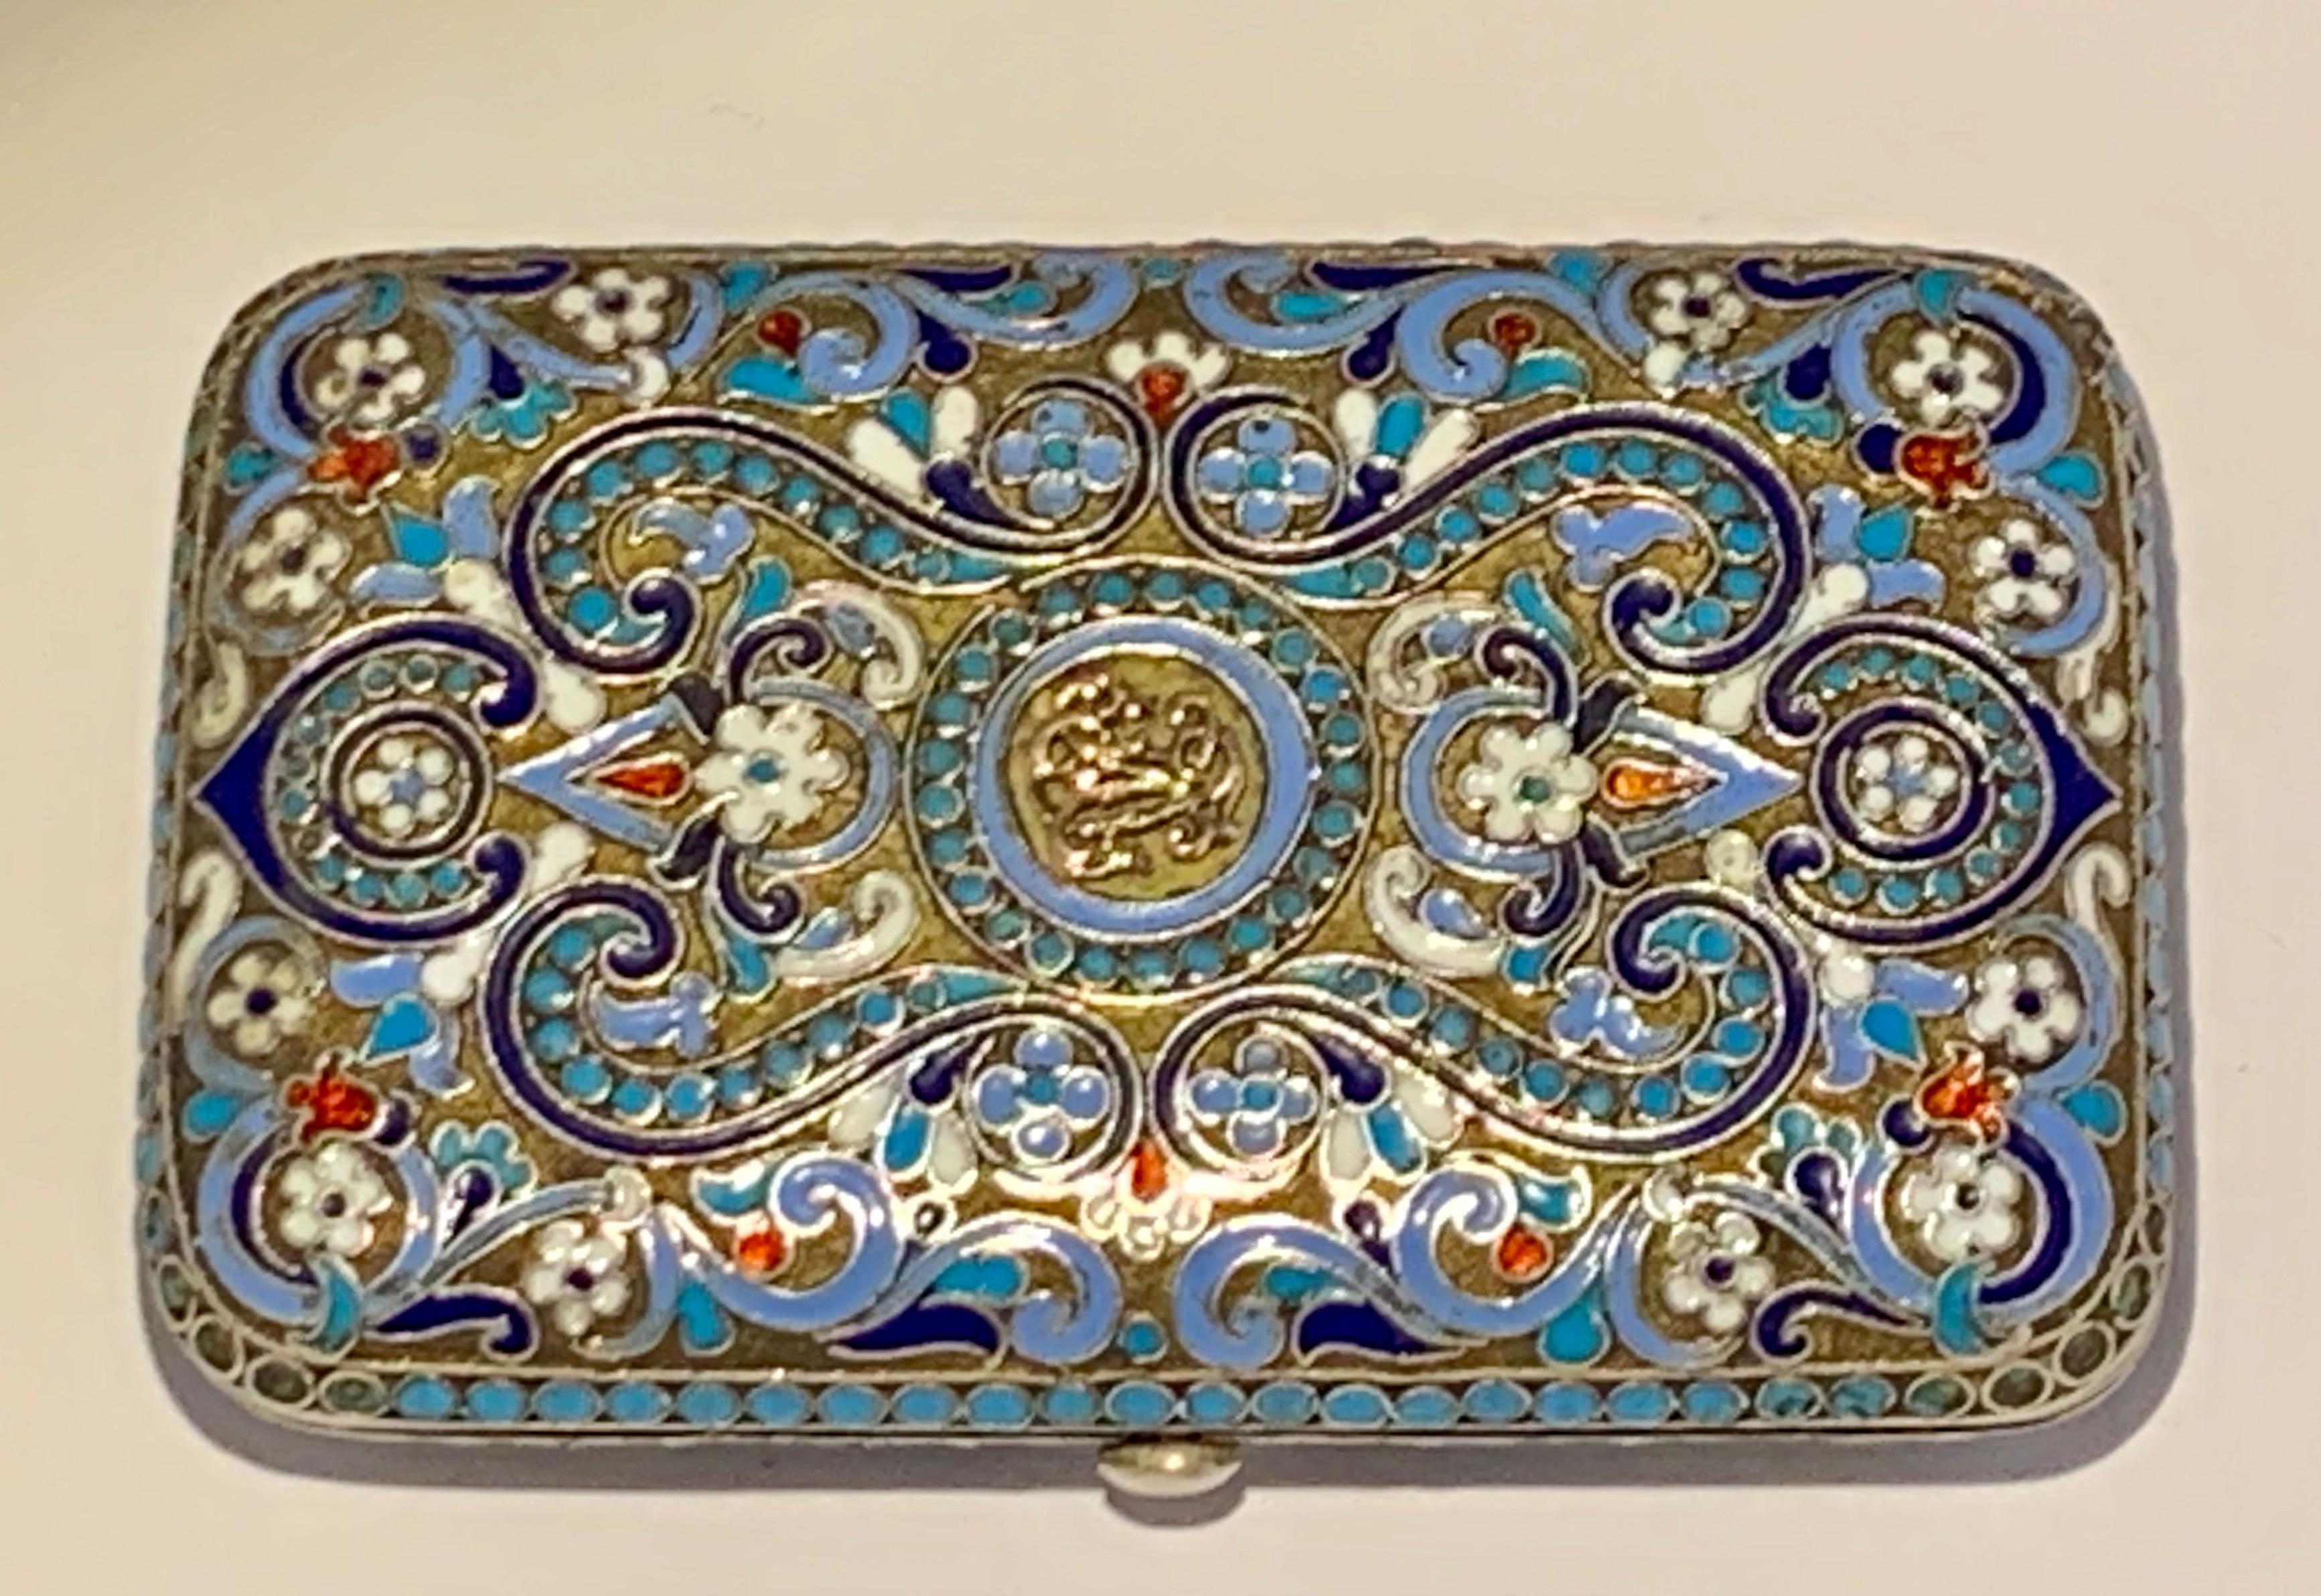 Die Datumsangabe auf dieser Schachtel ist 1894
Prüferzeichen AA (Anatoly A Artsybashev).
Deckel und Seiten mit Blattranken in Rot, Weiß, einer goldenen Initiale oben, lila, apfelgrün und drei Blautönen innerhalb türkisblauer Perlenbordüren,